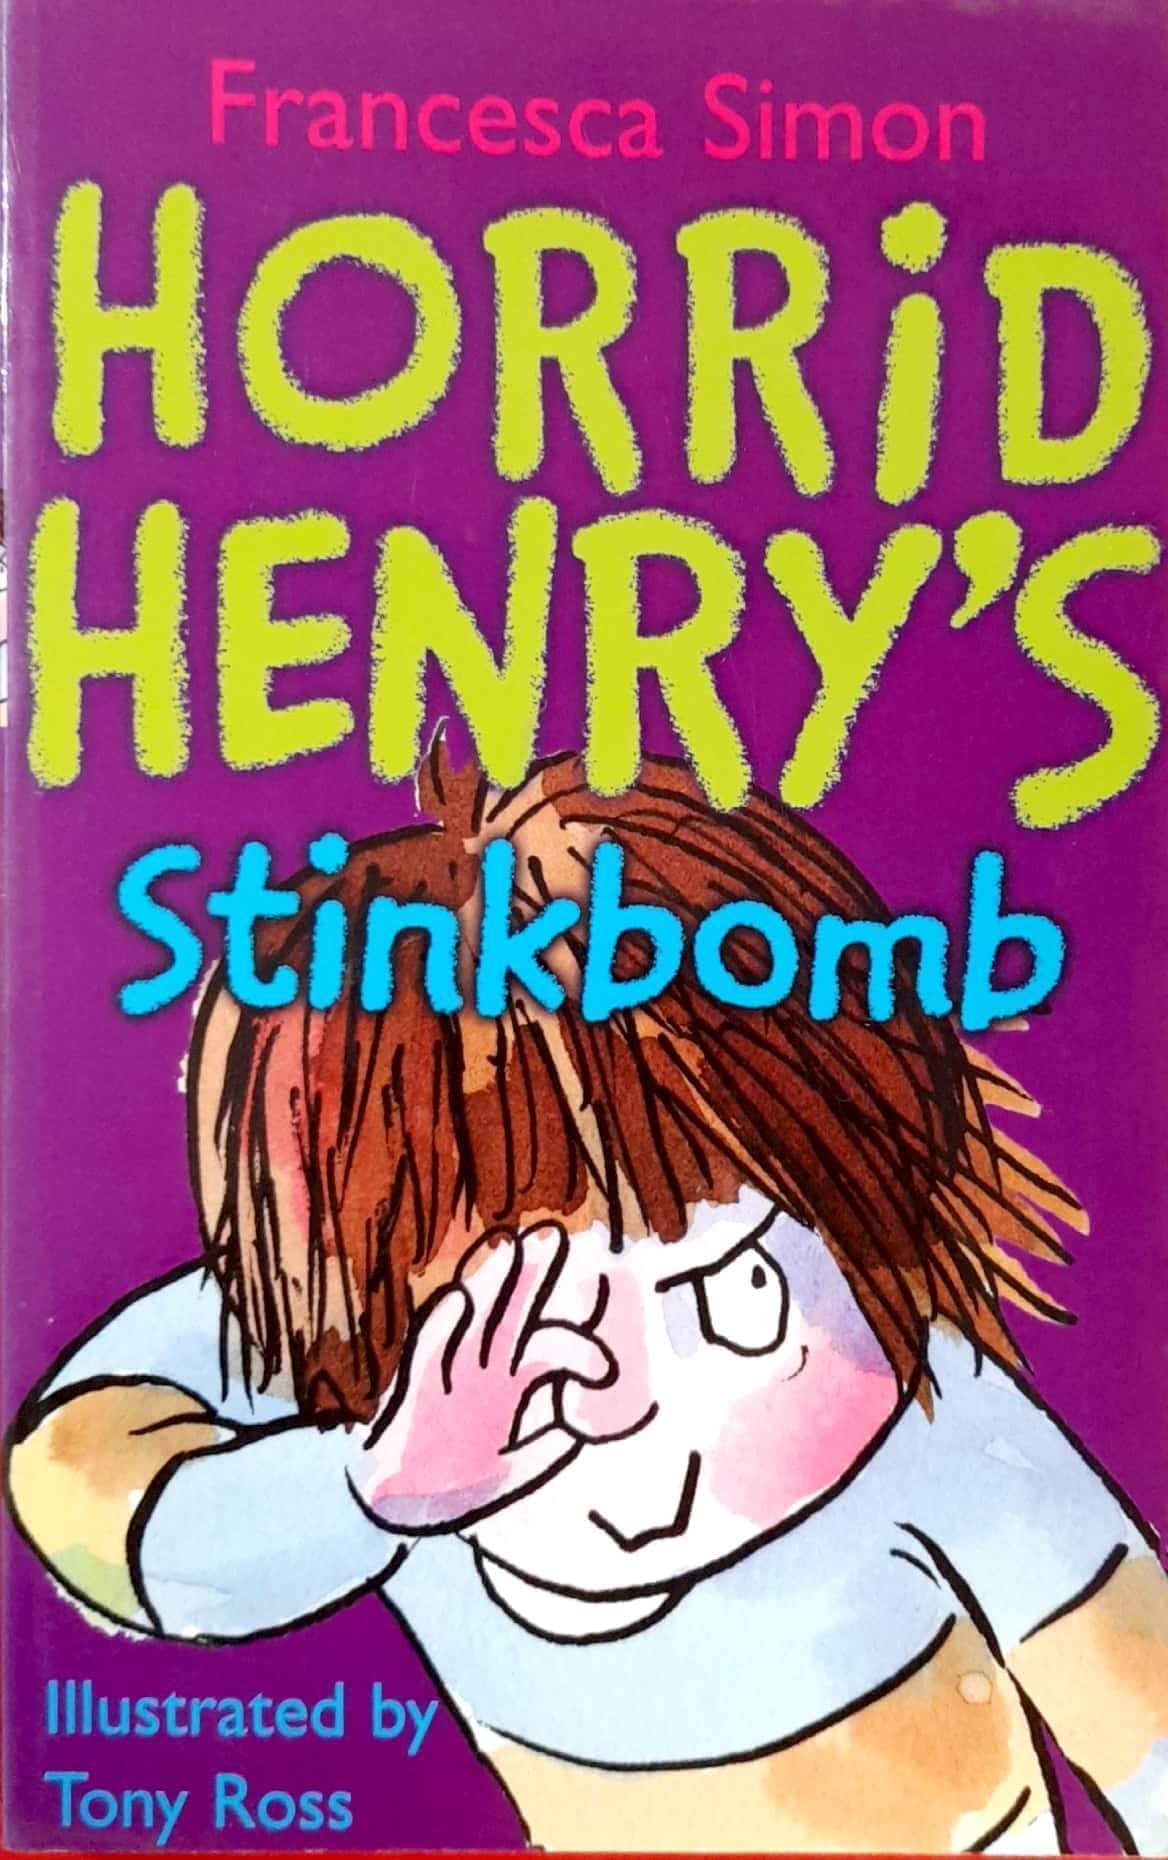 IMG : Horrid Henry's Stinkbomb